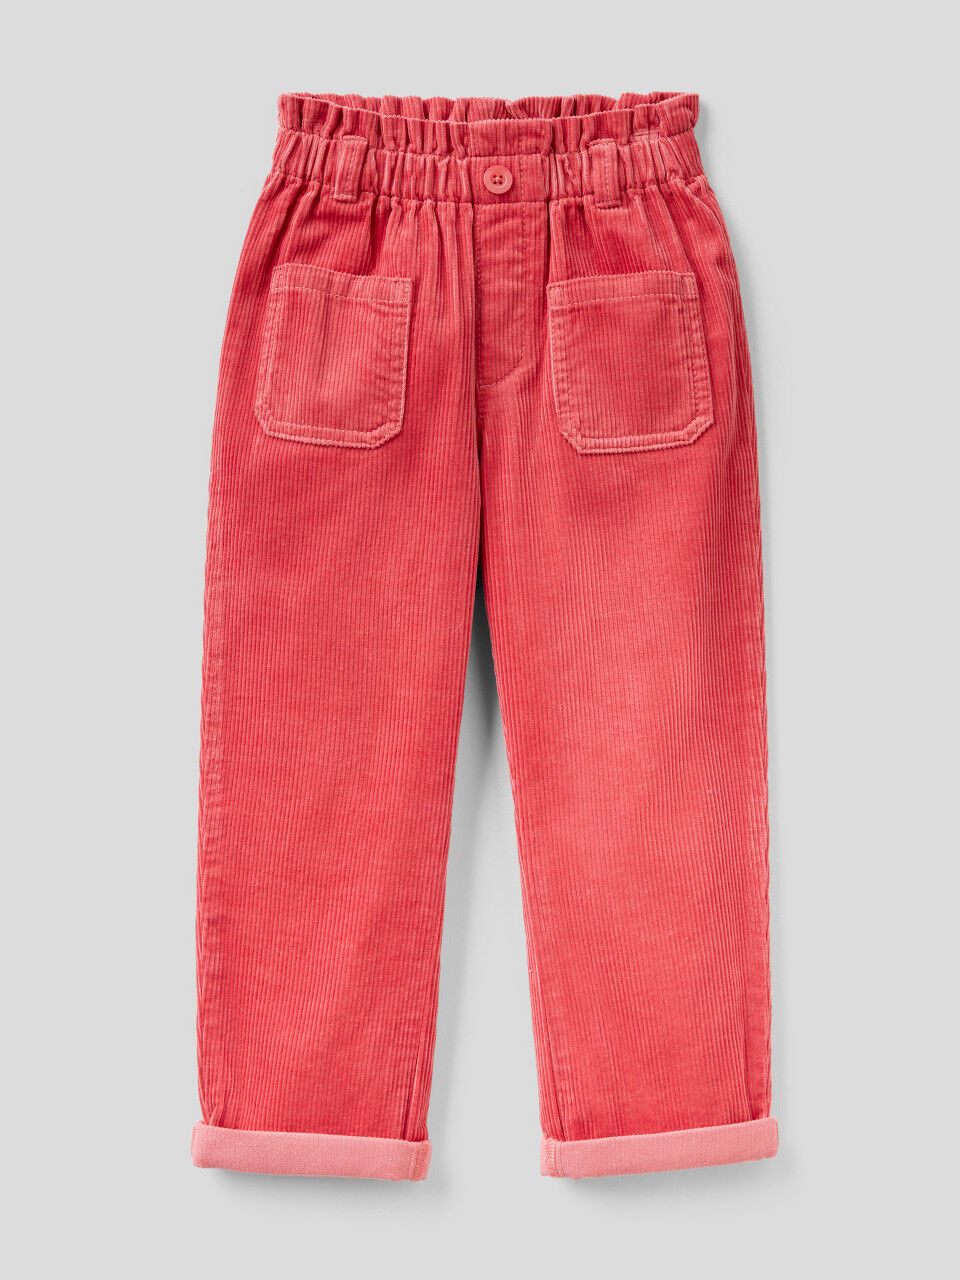 Elle Kids Trousers  Buy Elle Kids Girls Red Striped Trouser Online  Nykaa  Fashion